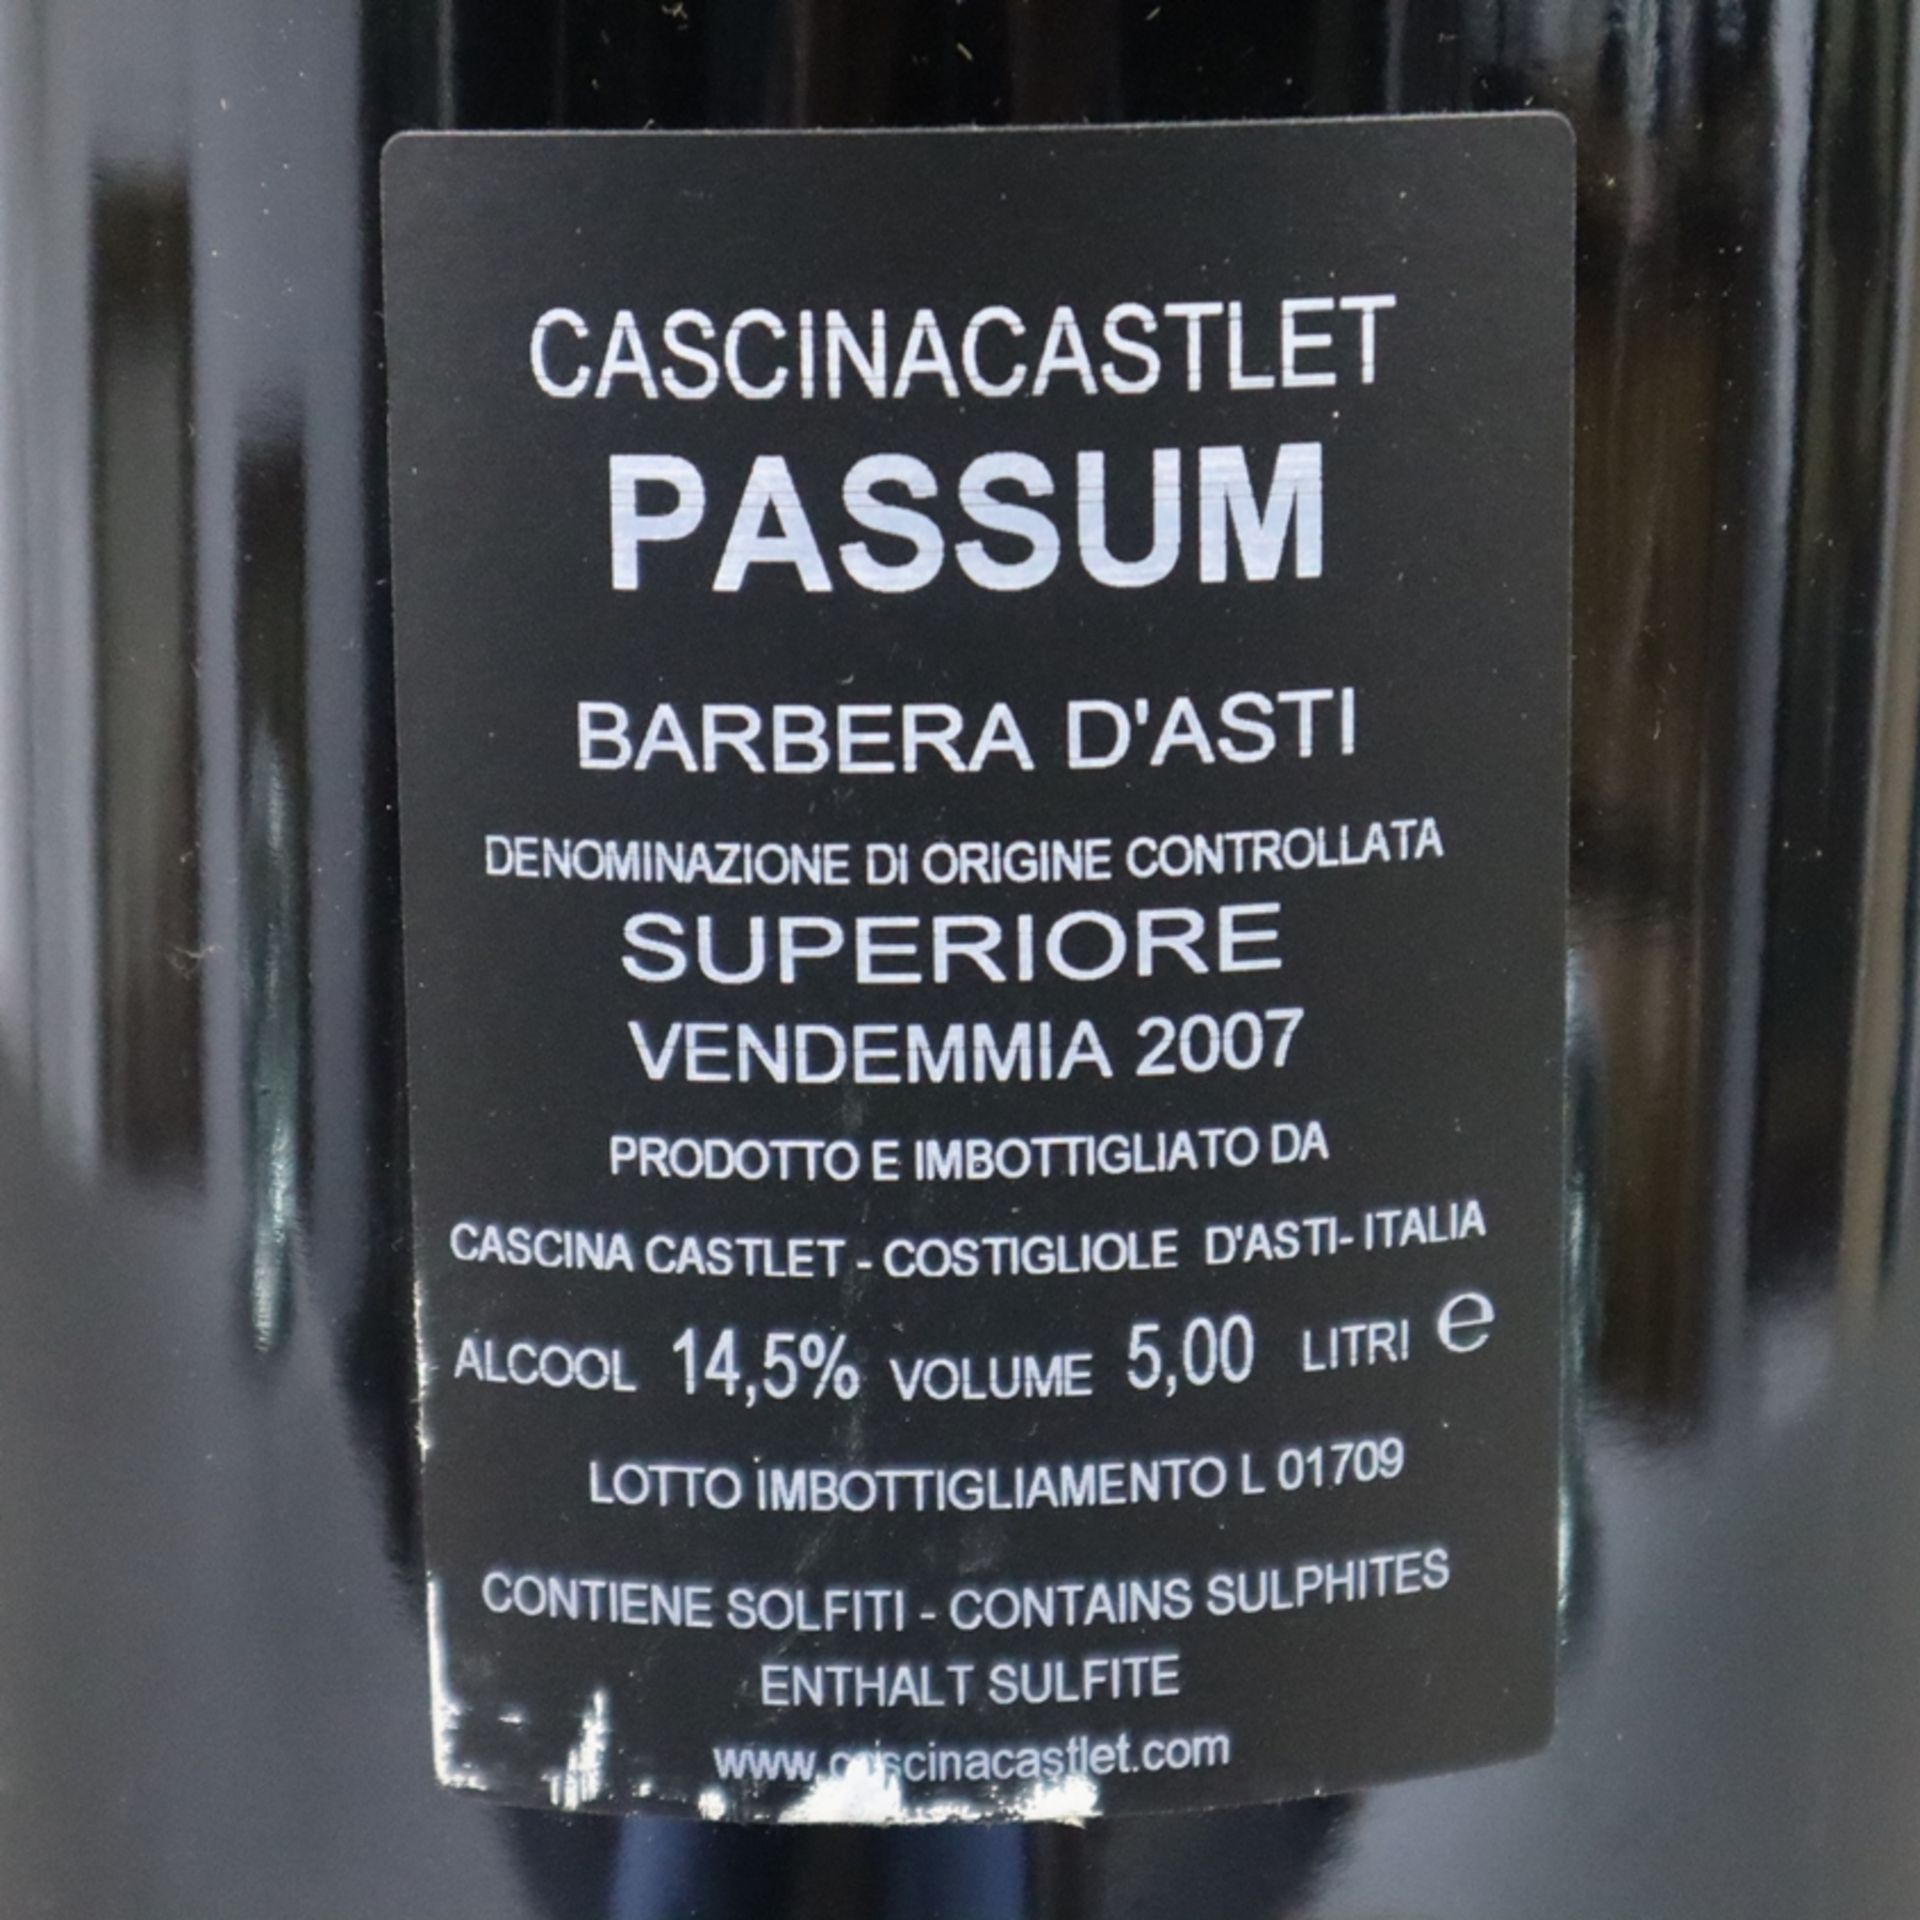 Wein - Cascina Castlèt Passum, Barbera d'Asti D.O.C.G. Superiore Vendemmia 2007, Rotwein, Italien, - Image 5 of 7